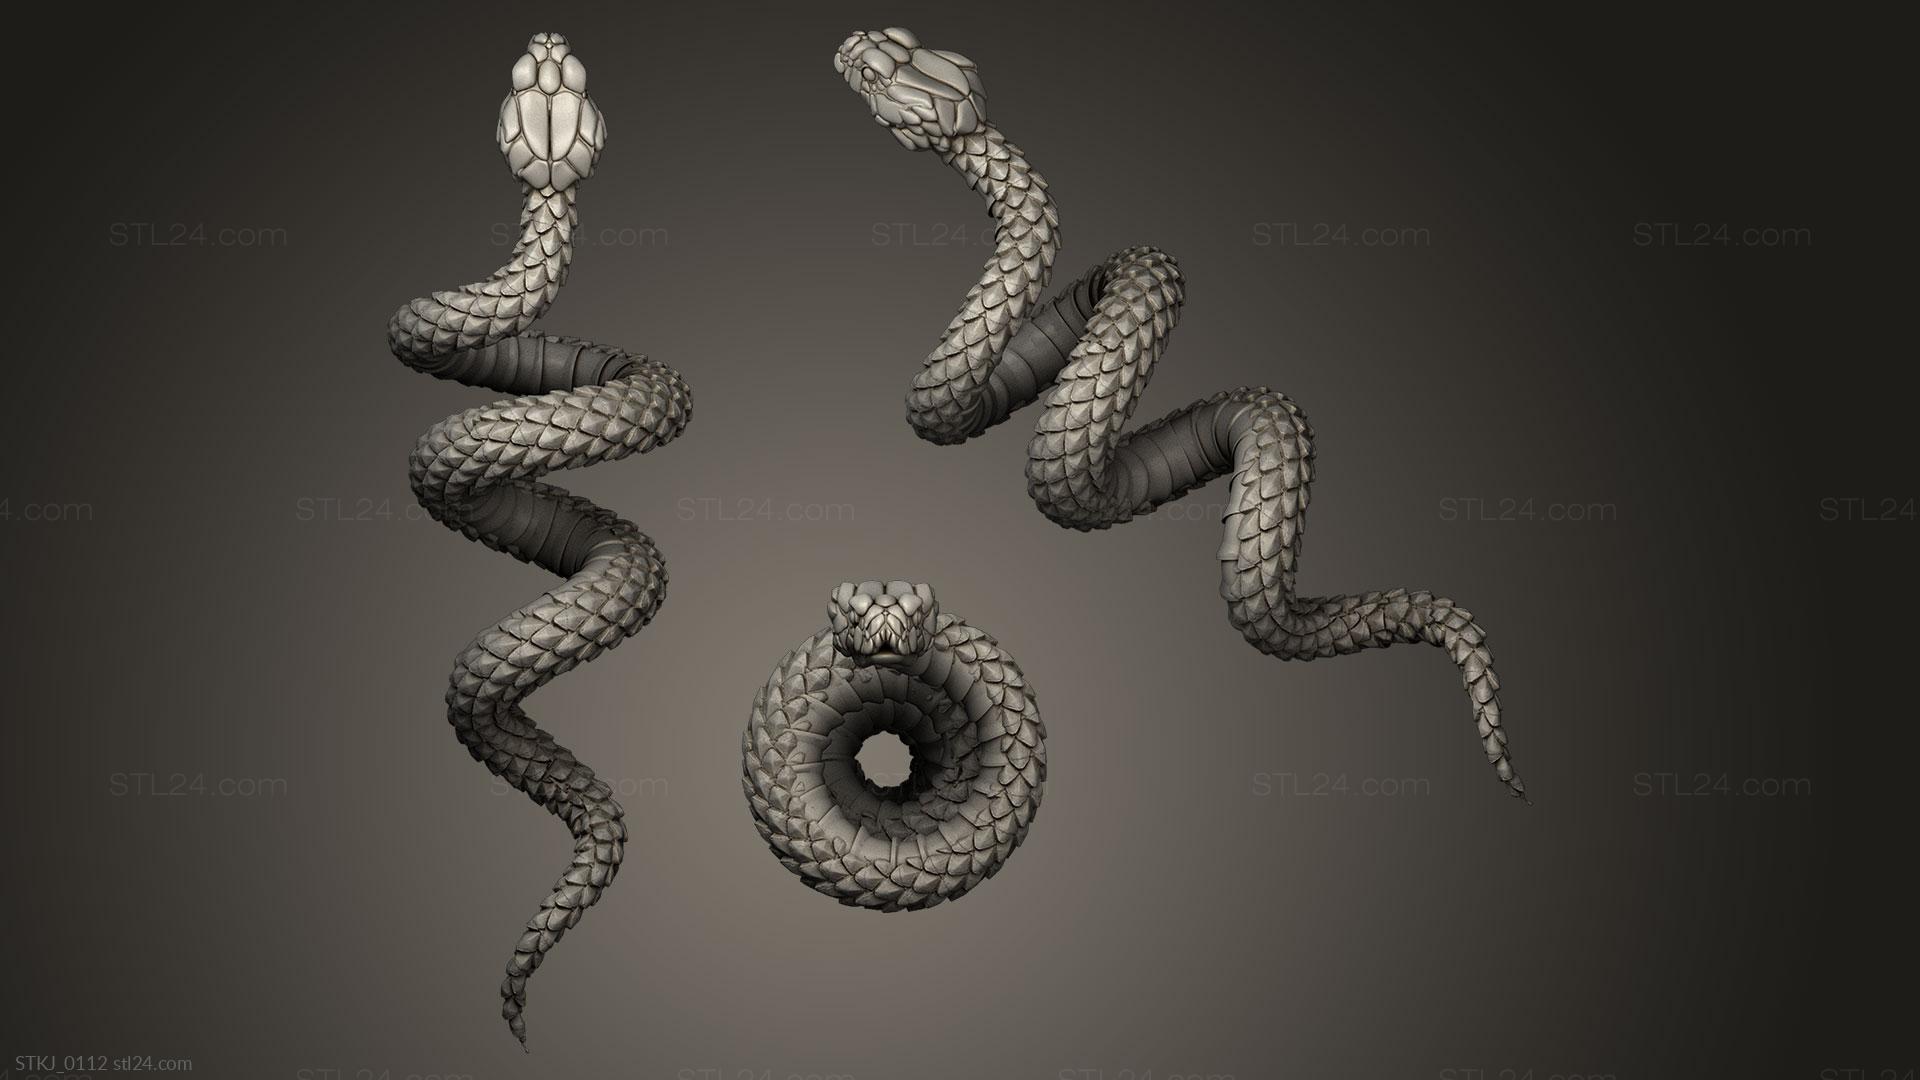 snake 3D Model